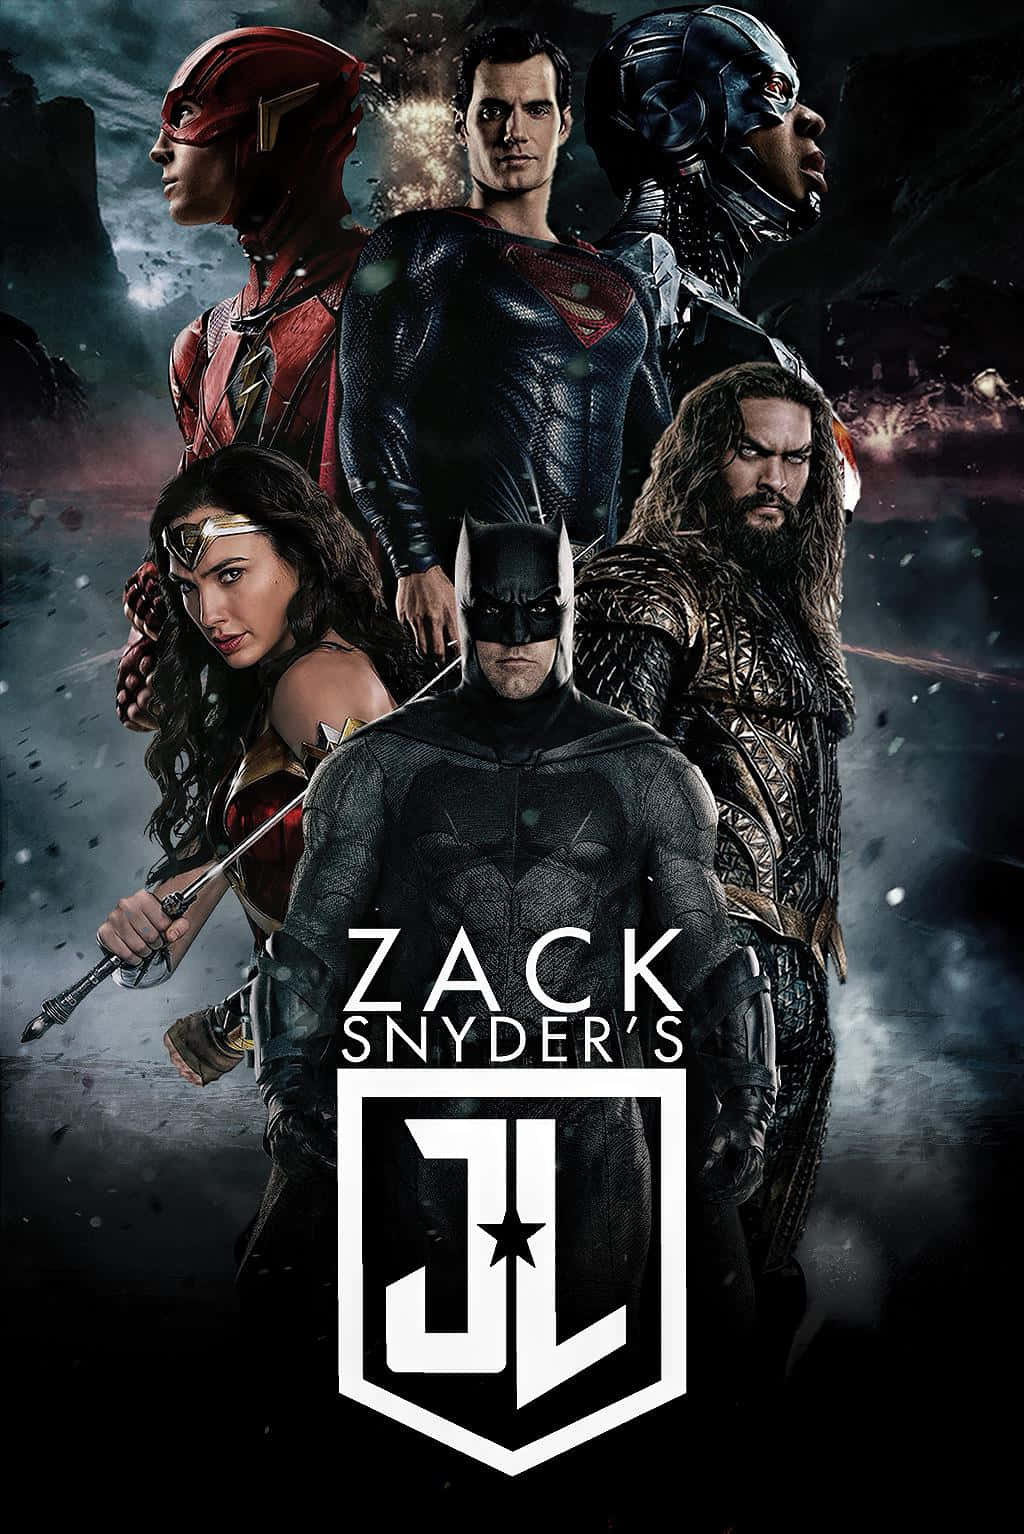 Umposter Para A Liga Da Justiça De Zack Snyder. Papel de Parede